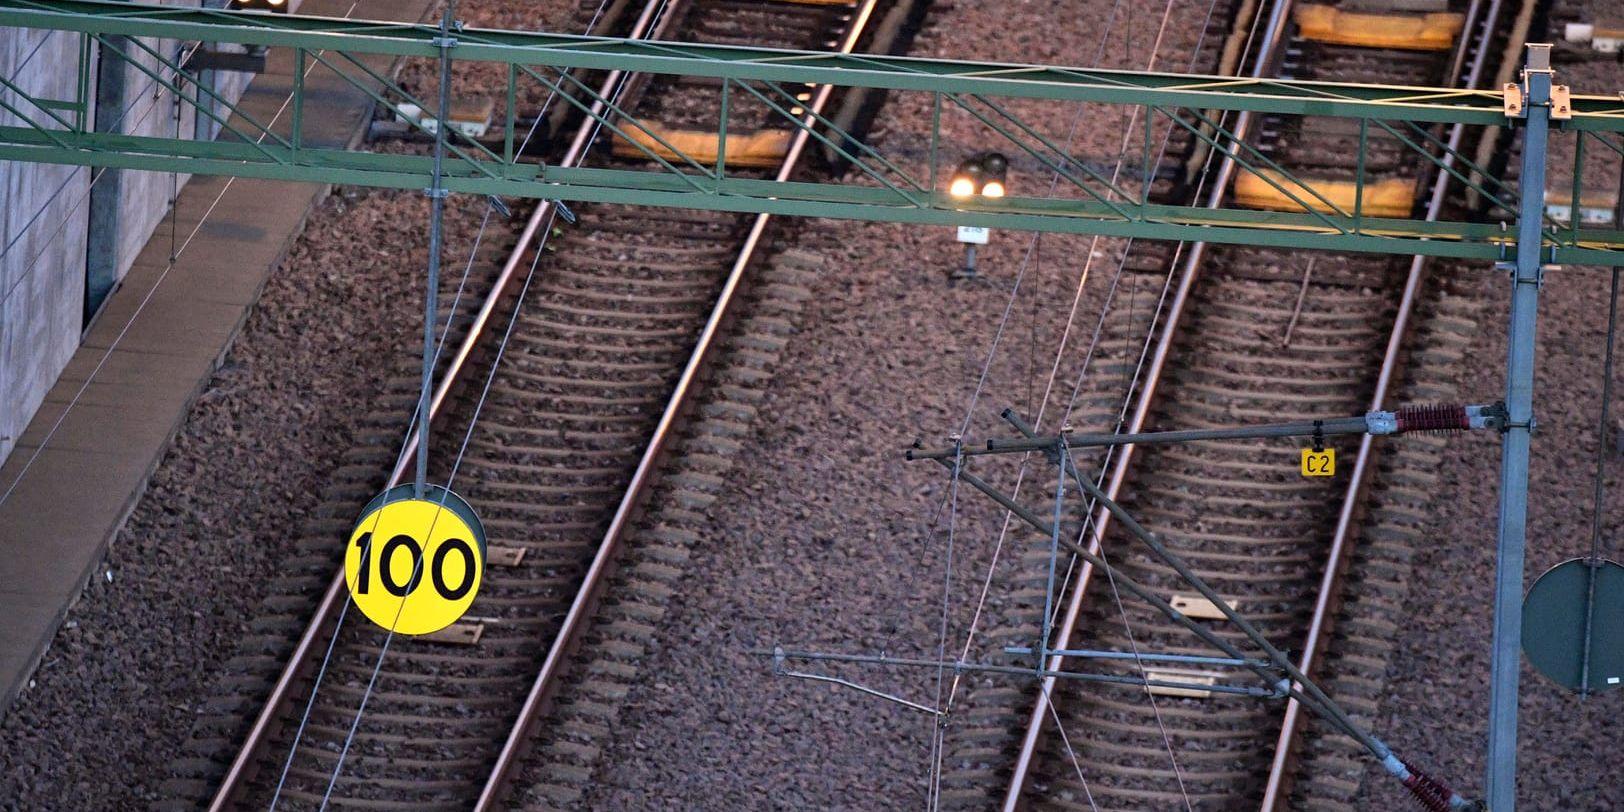 Tågstoppet i Helsingborg kan få följdverkningar i tågnätet i södra Sverige. Arkivbild.